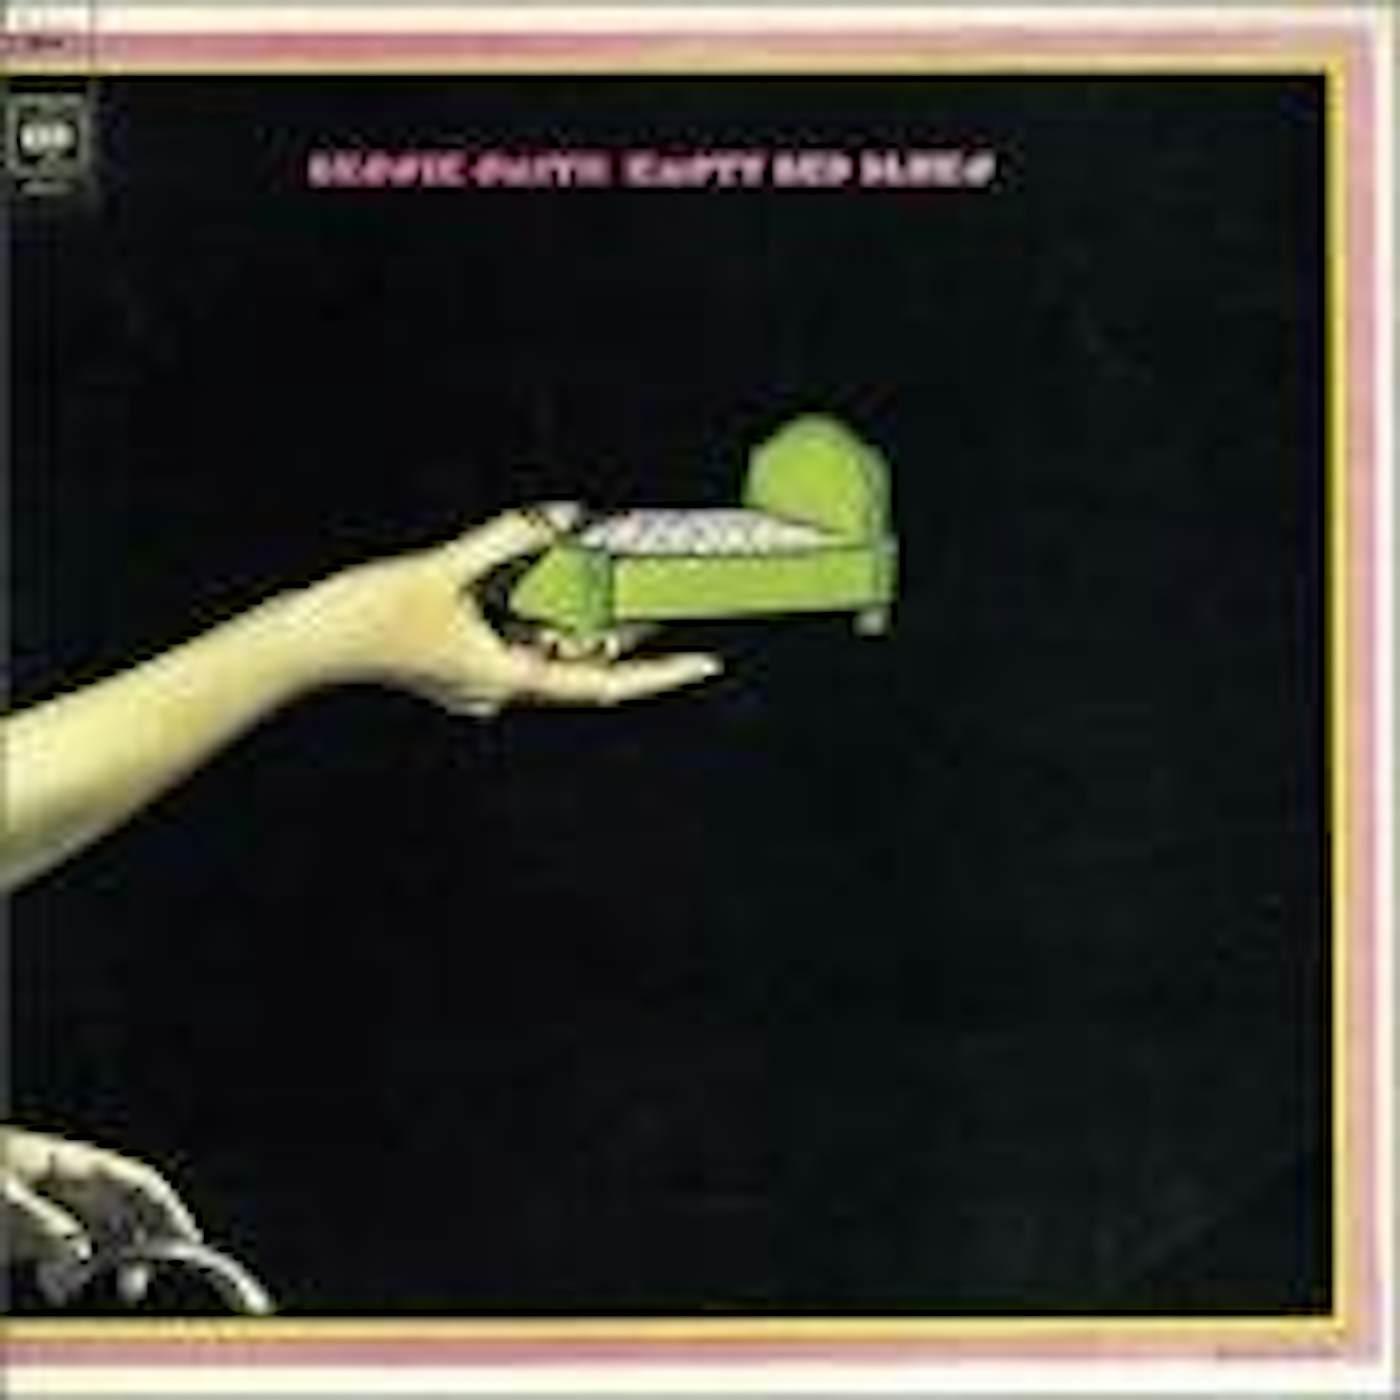 Bessie Smith EMPTY BED BLUES Vinyl Record